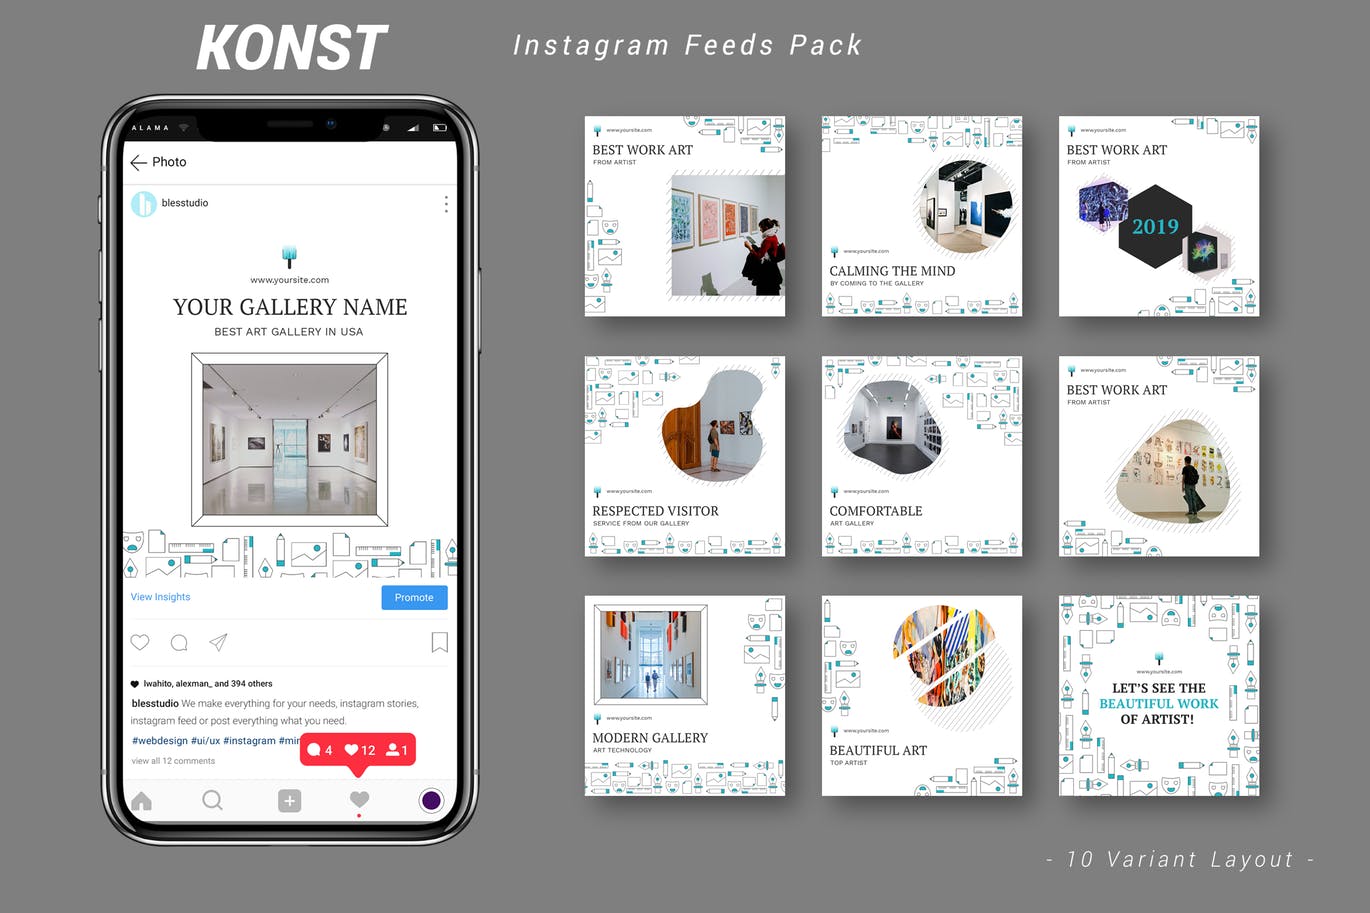 创意艺术展览主题Instagram信息流广告设计模板普贤居精选 Konst – Instagram Feeds Pack插图